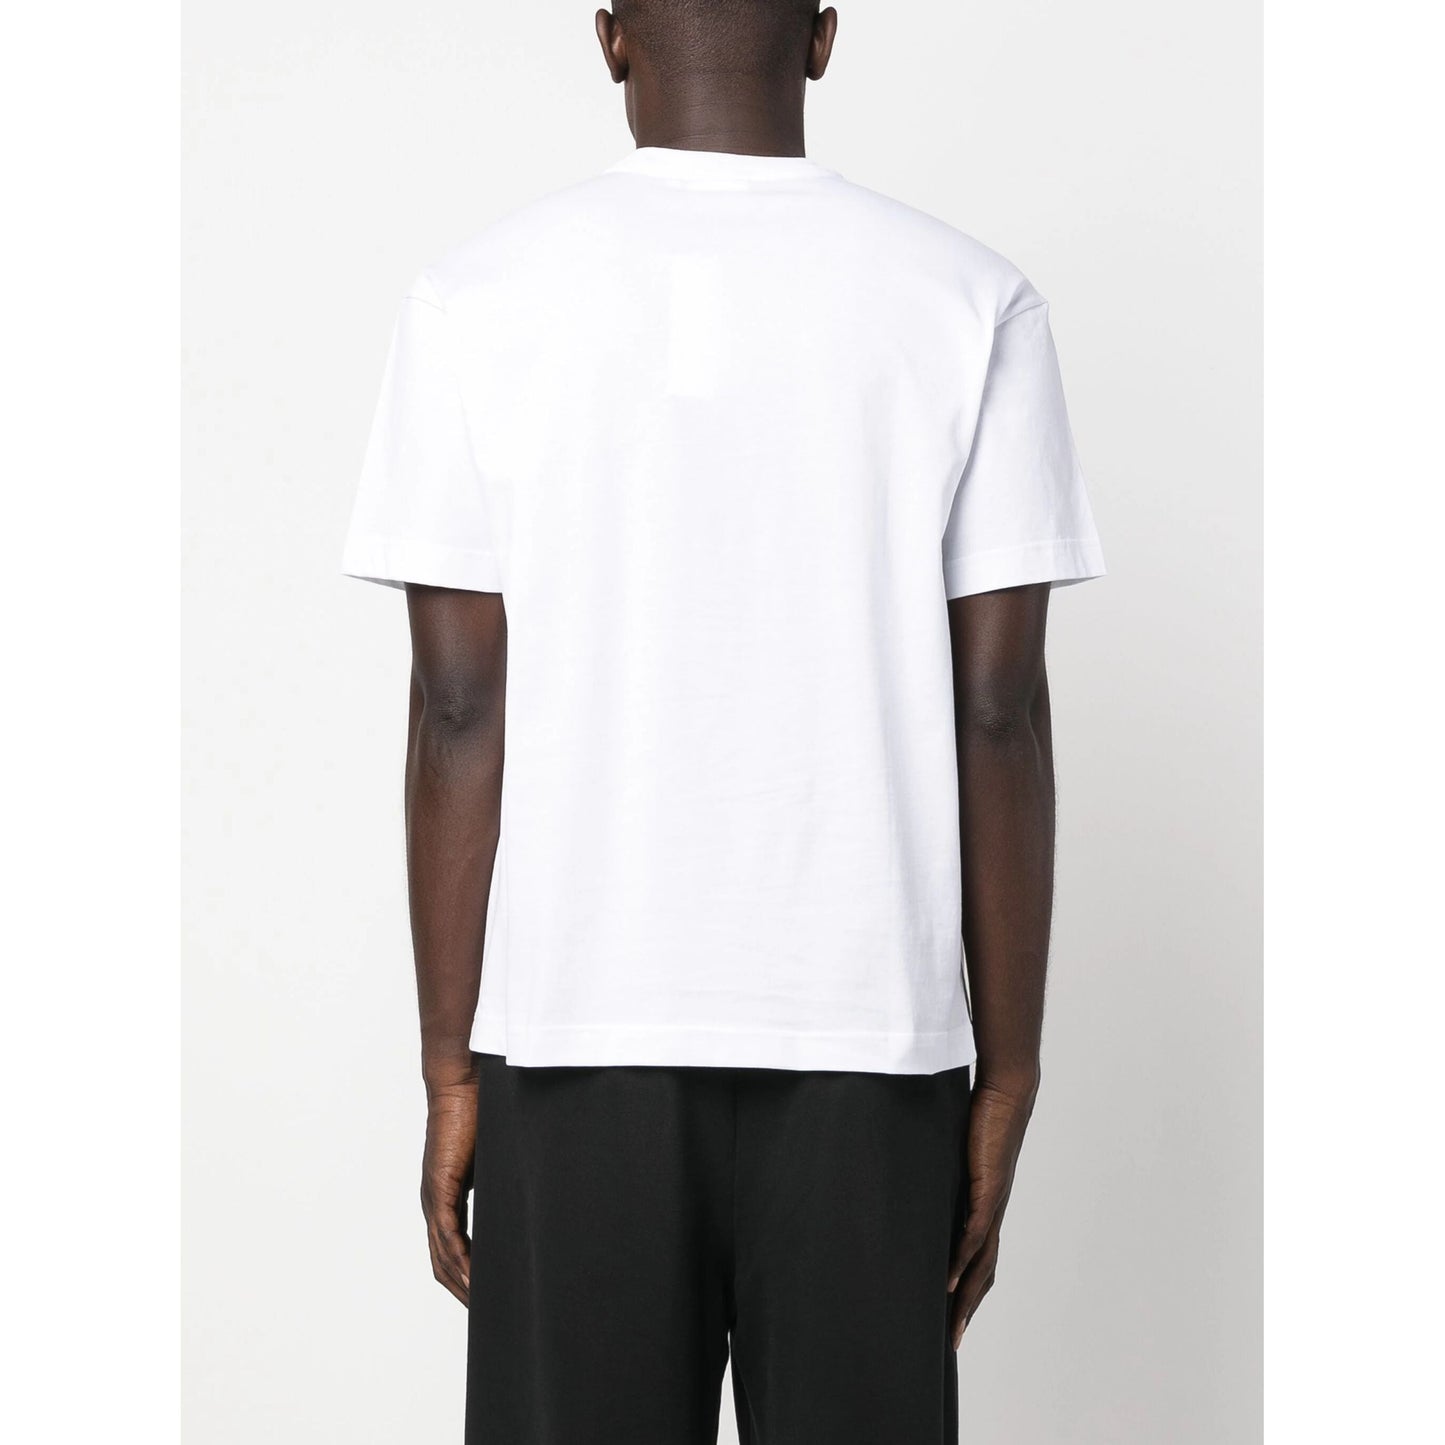 CALVIN KLEIN vyriški balti marškinėliai Photo print t-shirt